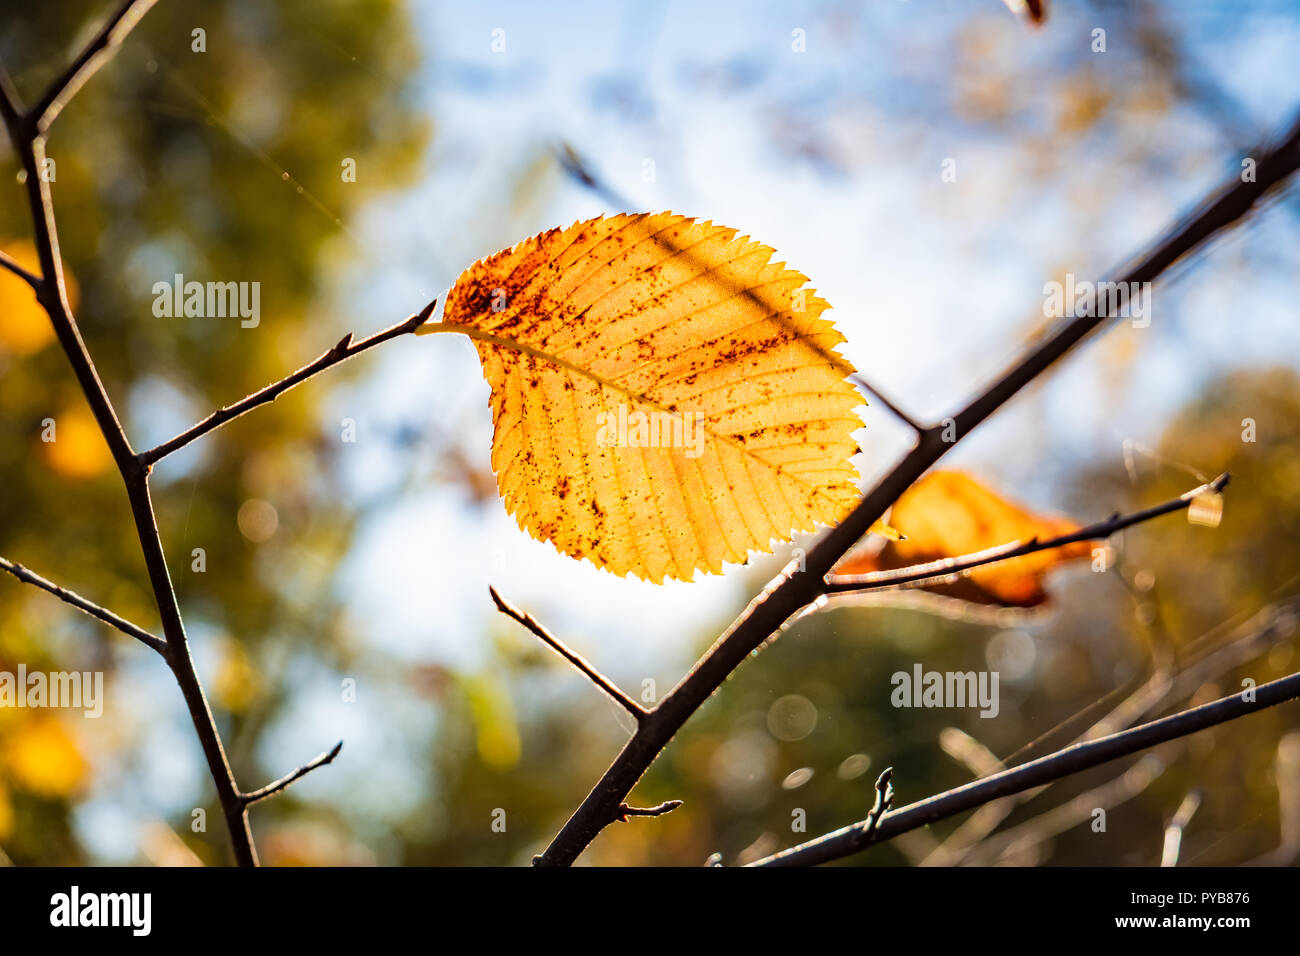 Indian summer Konzept: Herbst Sonne durch gelb Blatt scheint. Niederlassung des Baums mit Fading helle gelbe Blätter, photogrpahed gegen die Sonne Stockfoto